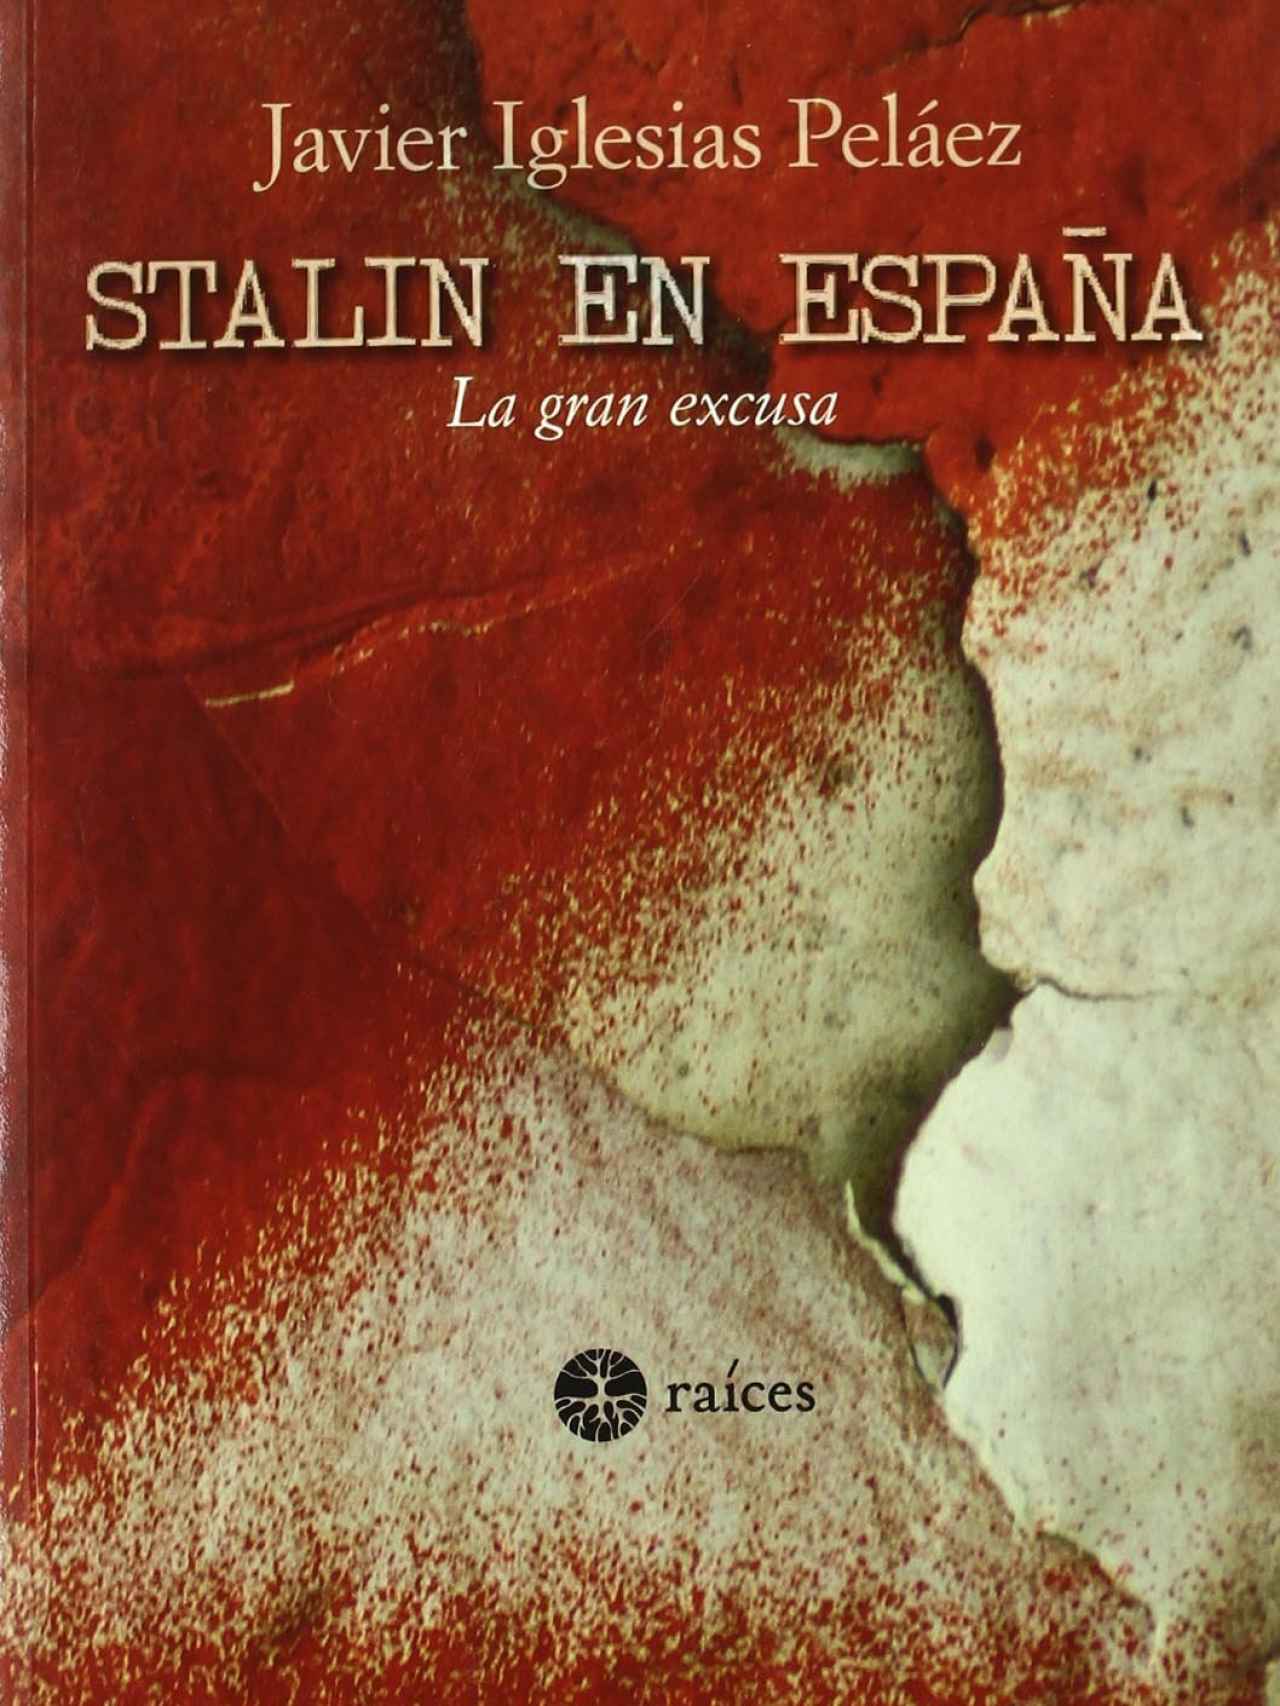 Portada de 'Stalin en España. La gran excusa', escrito por Francisco Javier Iglesias.